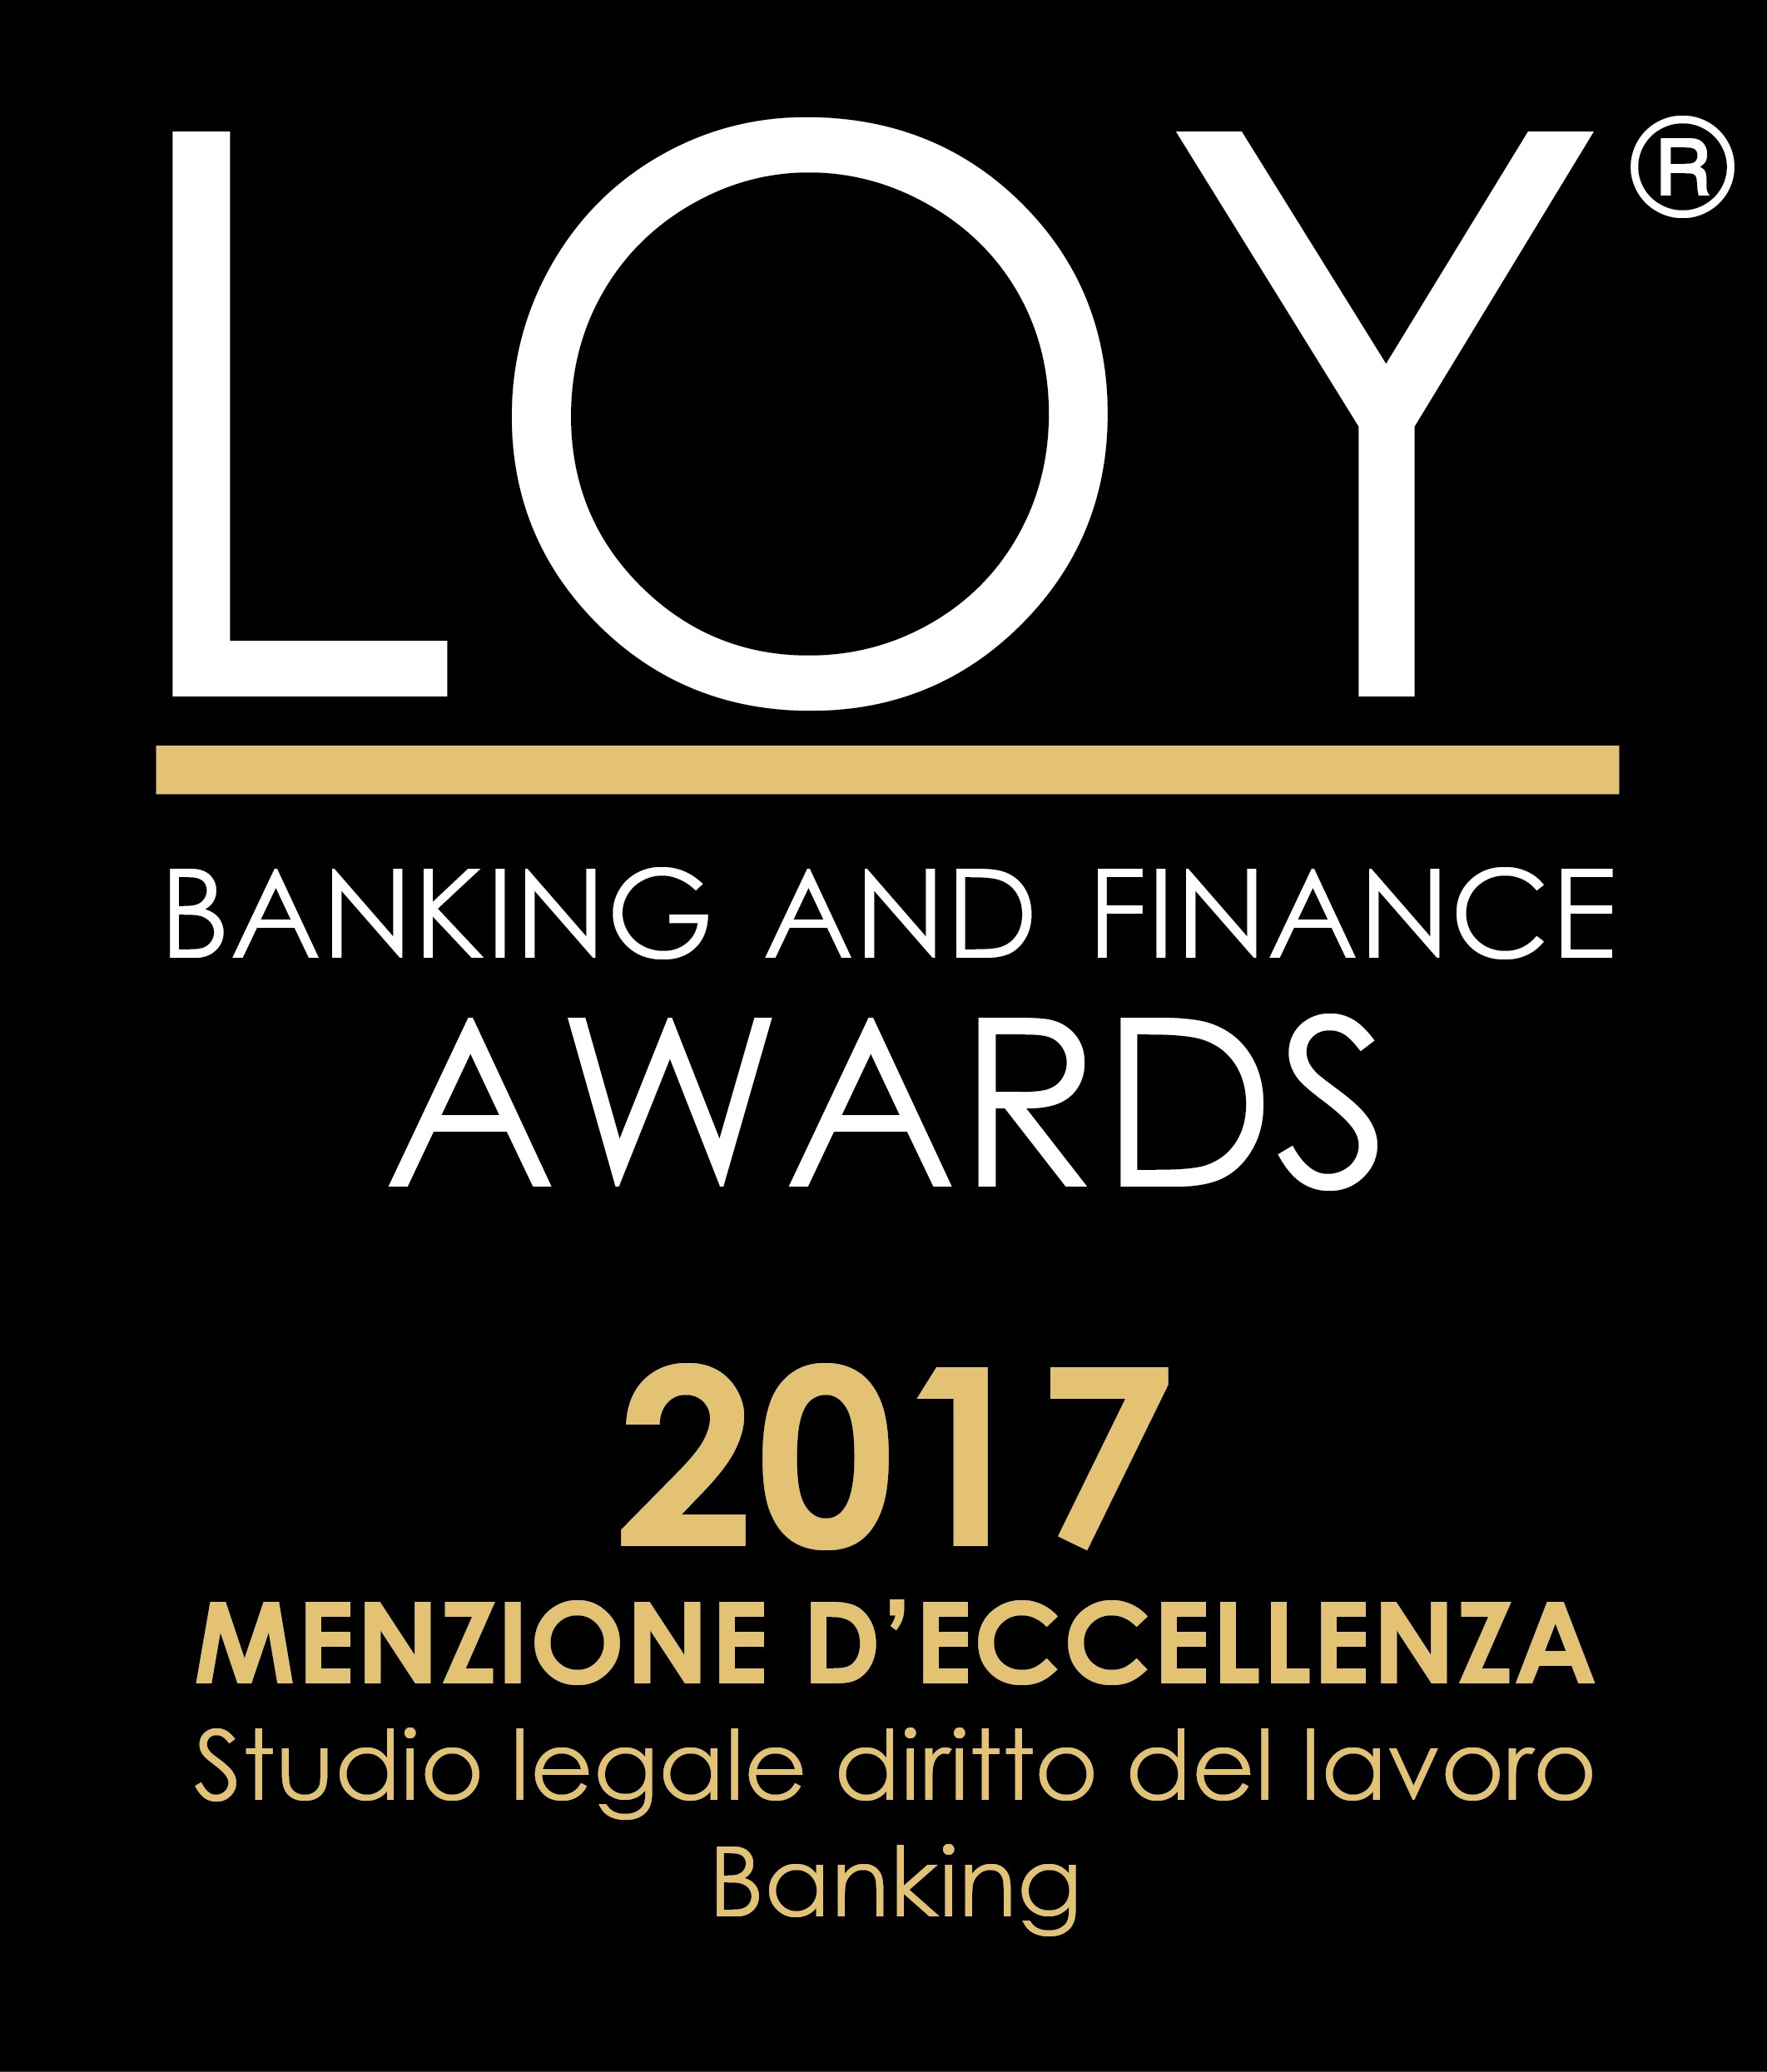 Studio legale Menichetti vincitore del Premio Loy 2017 